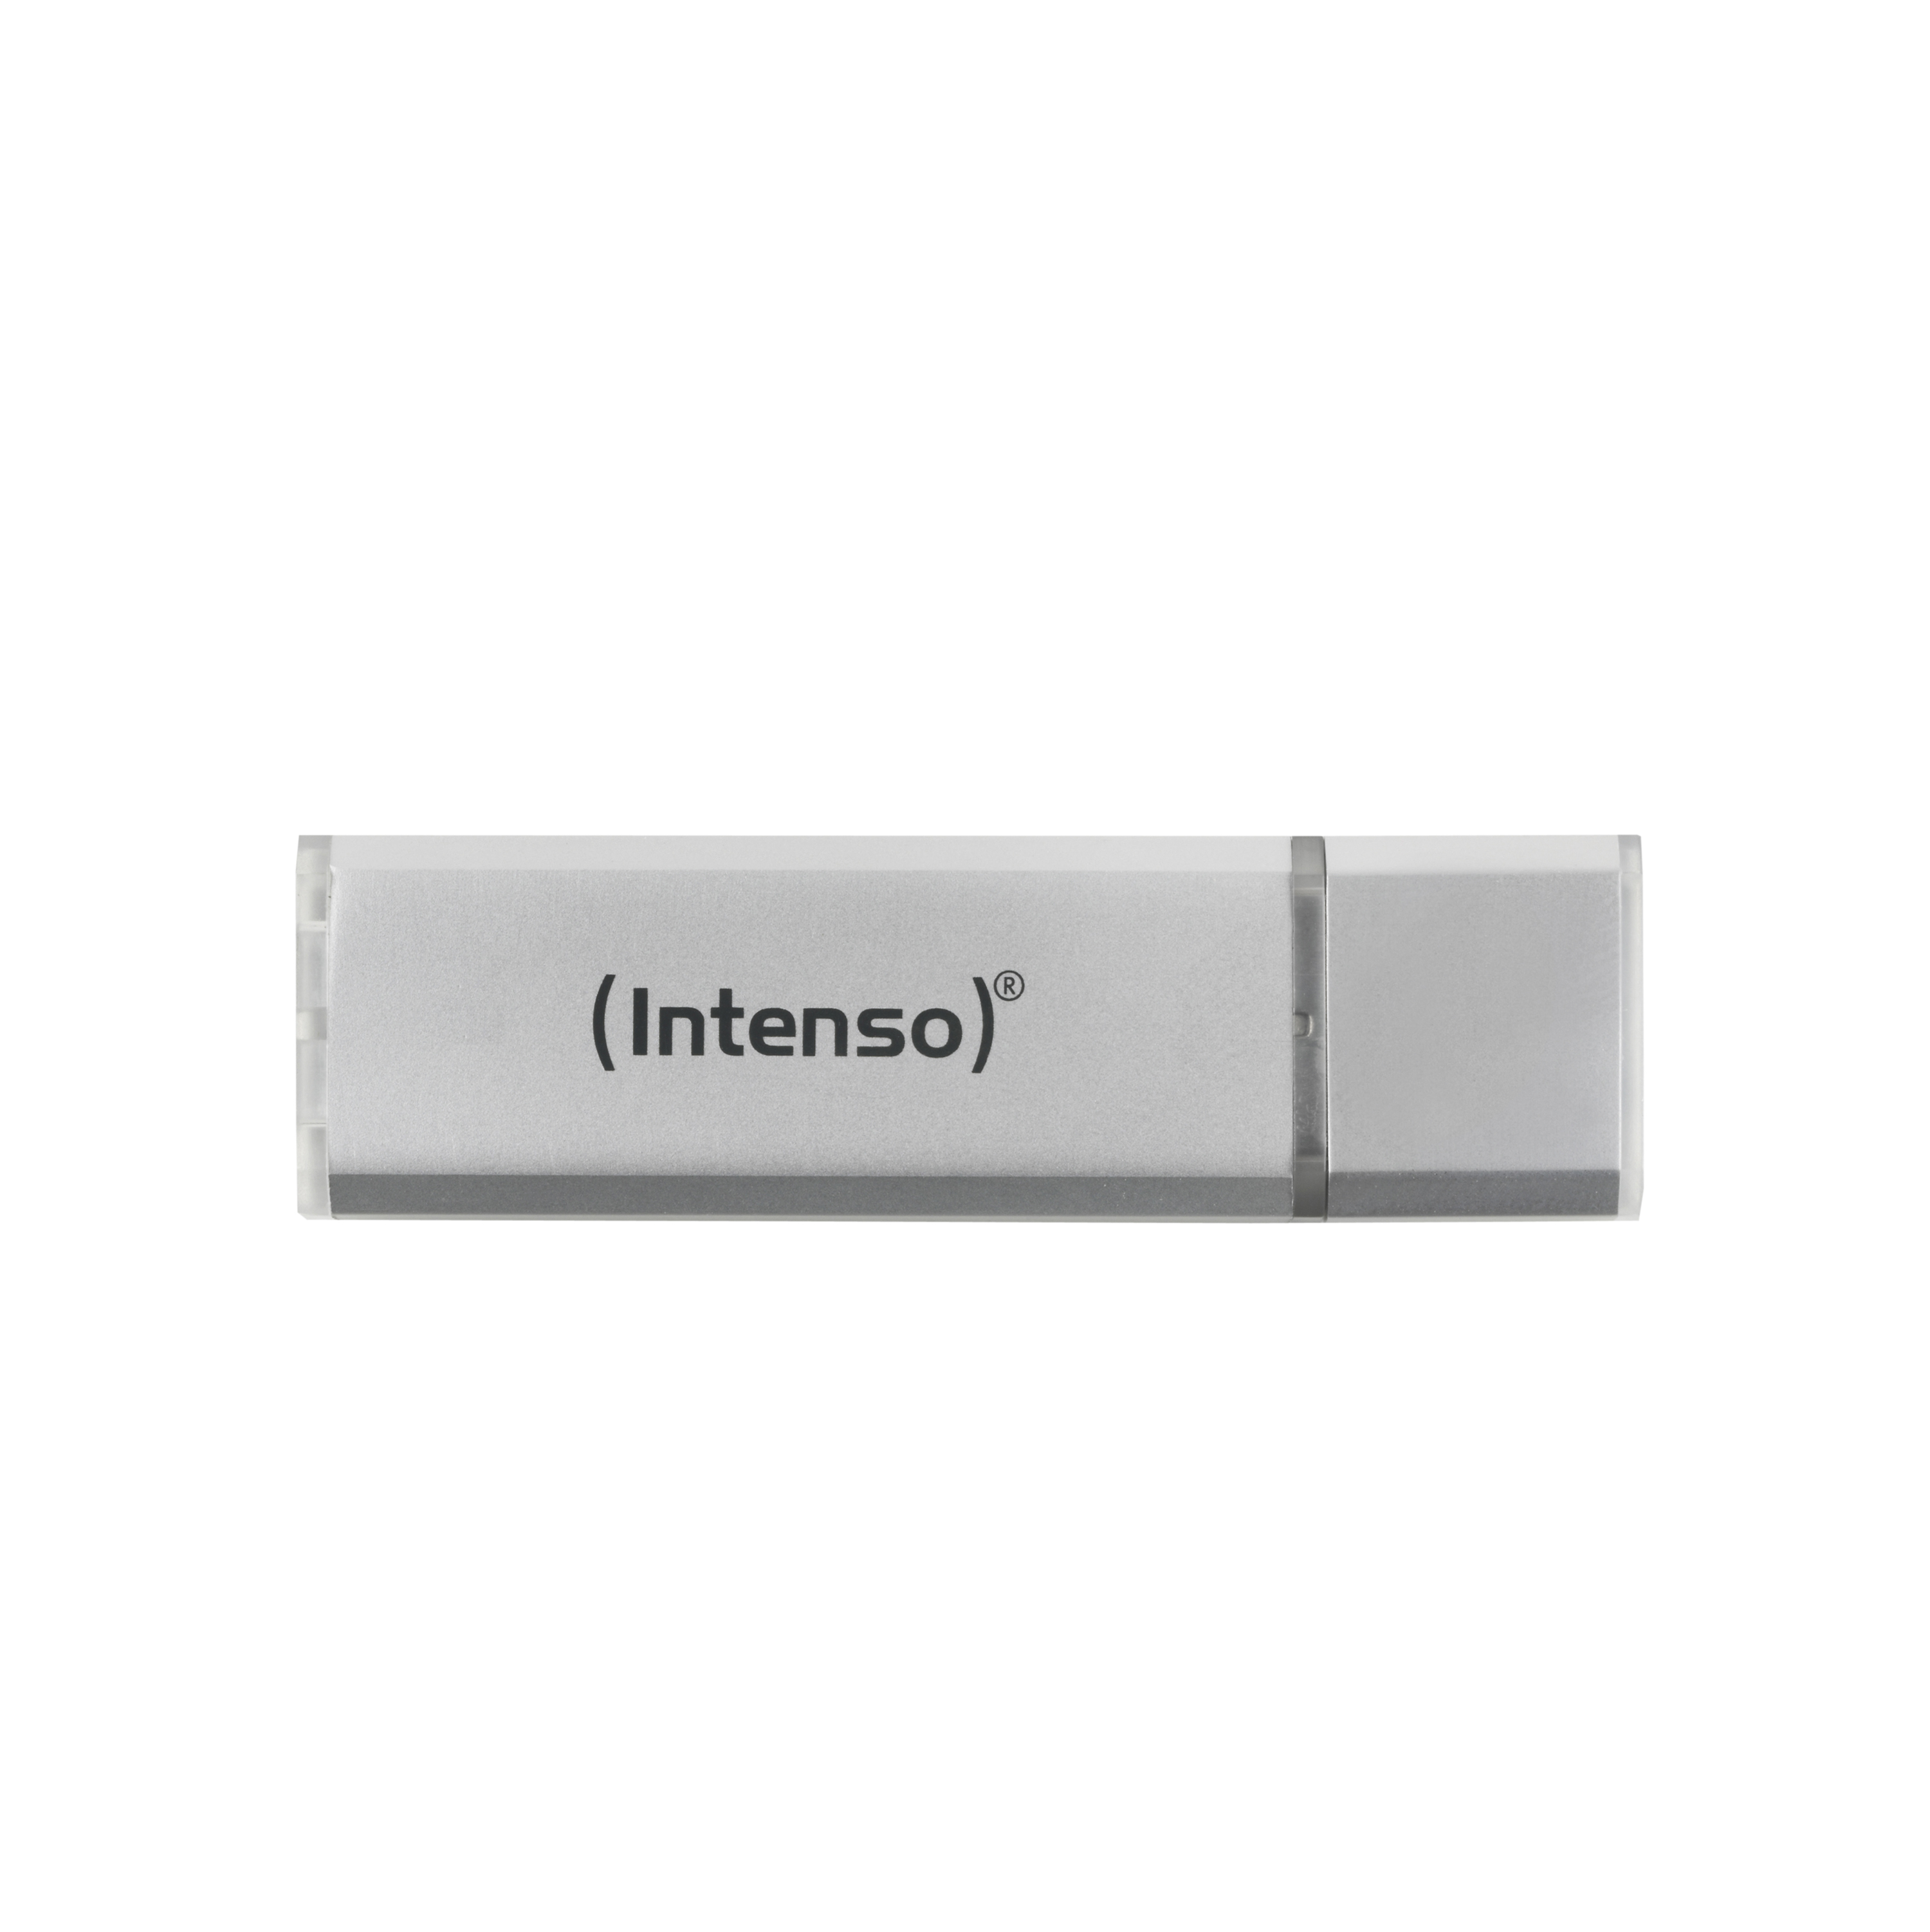 Intenso USB Drive 3.0 16GB ULTRA 3531470 - CMS01